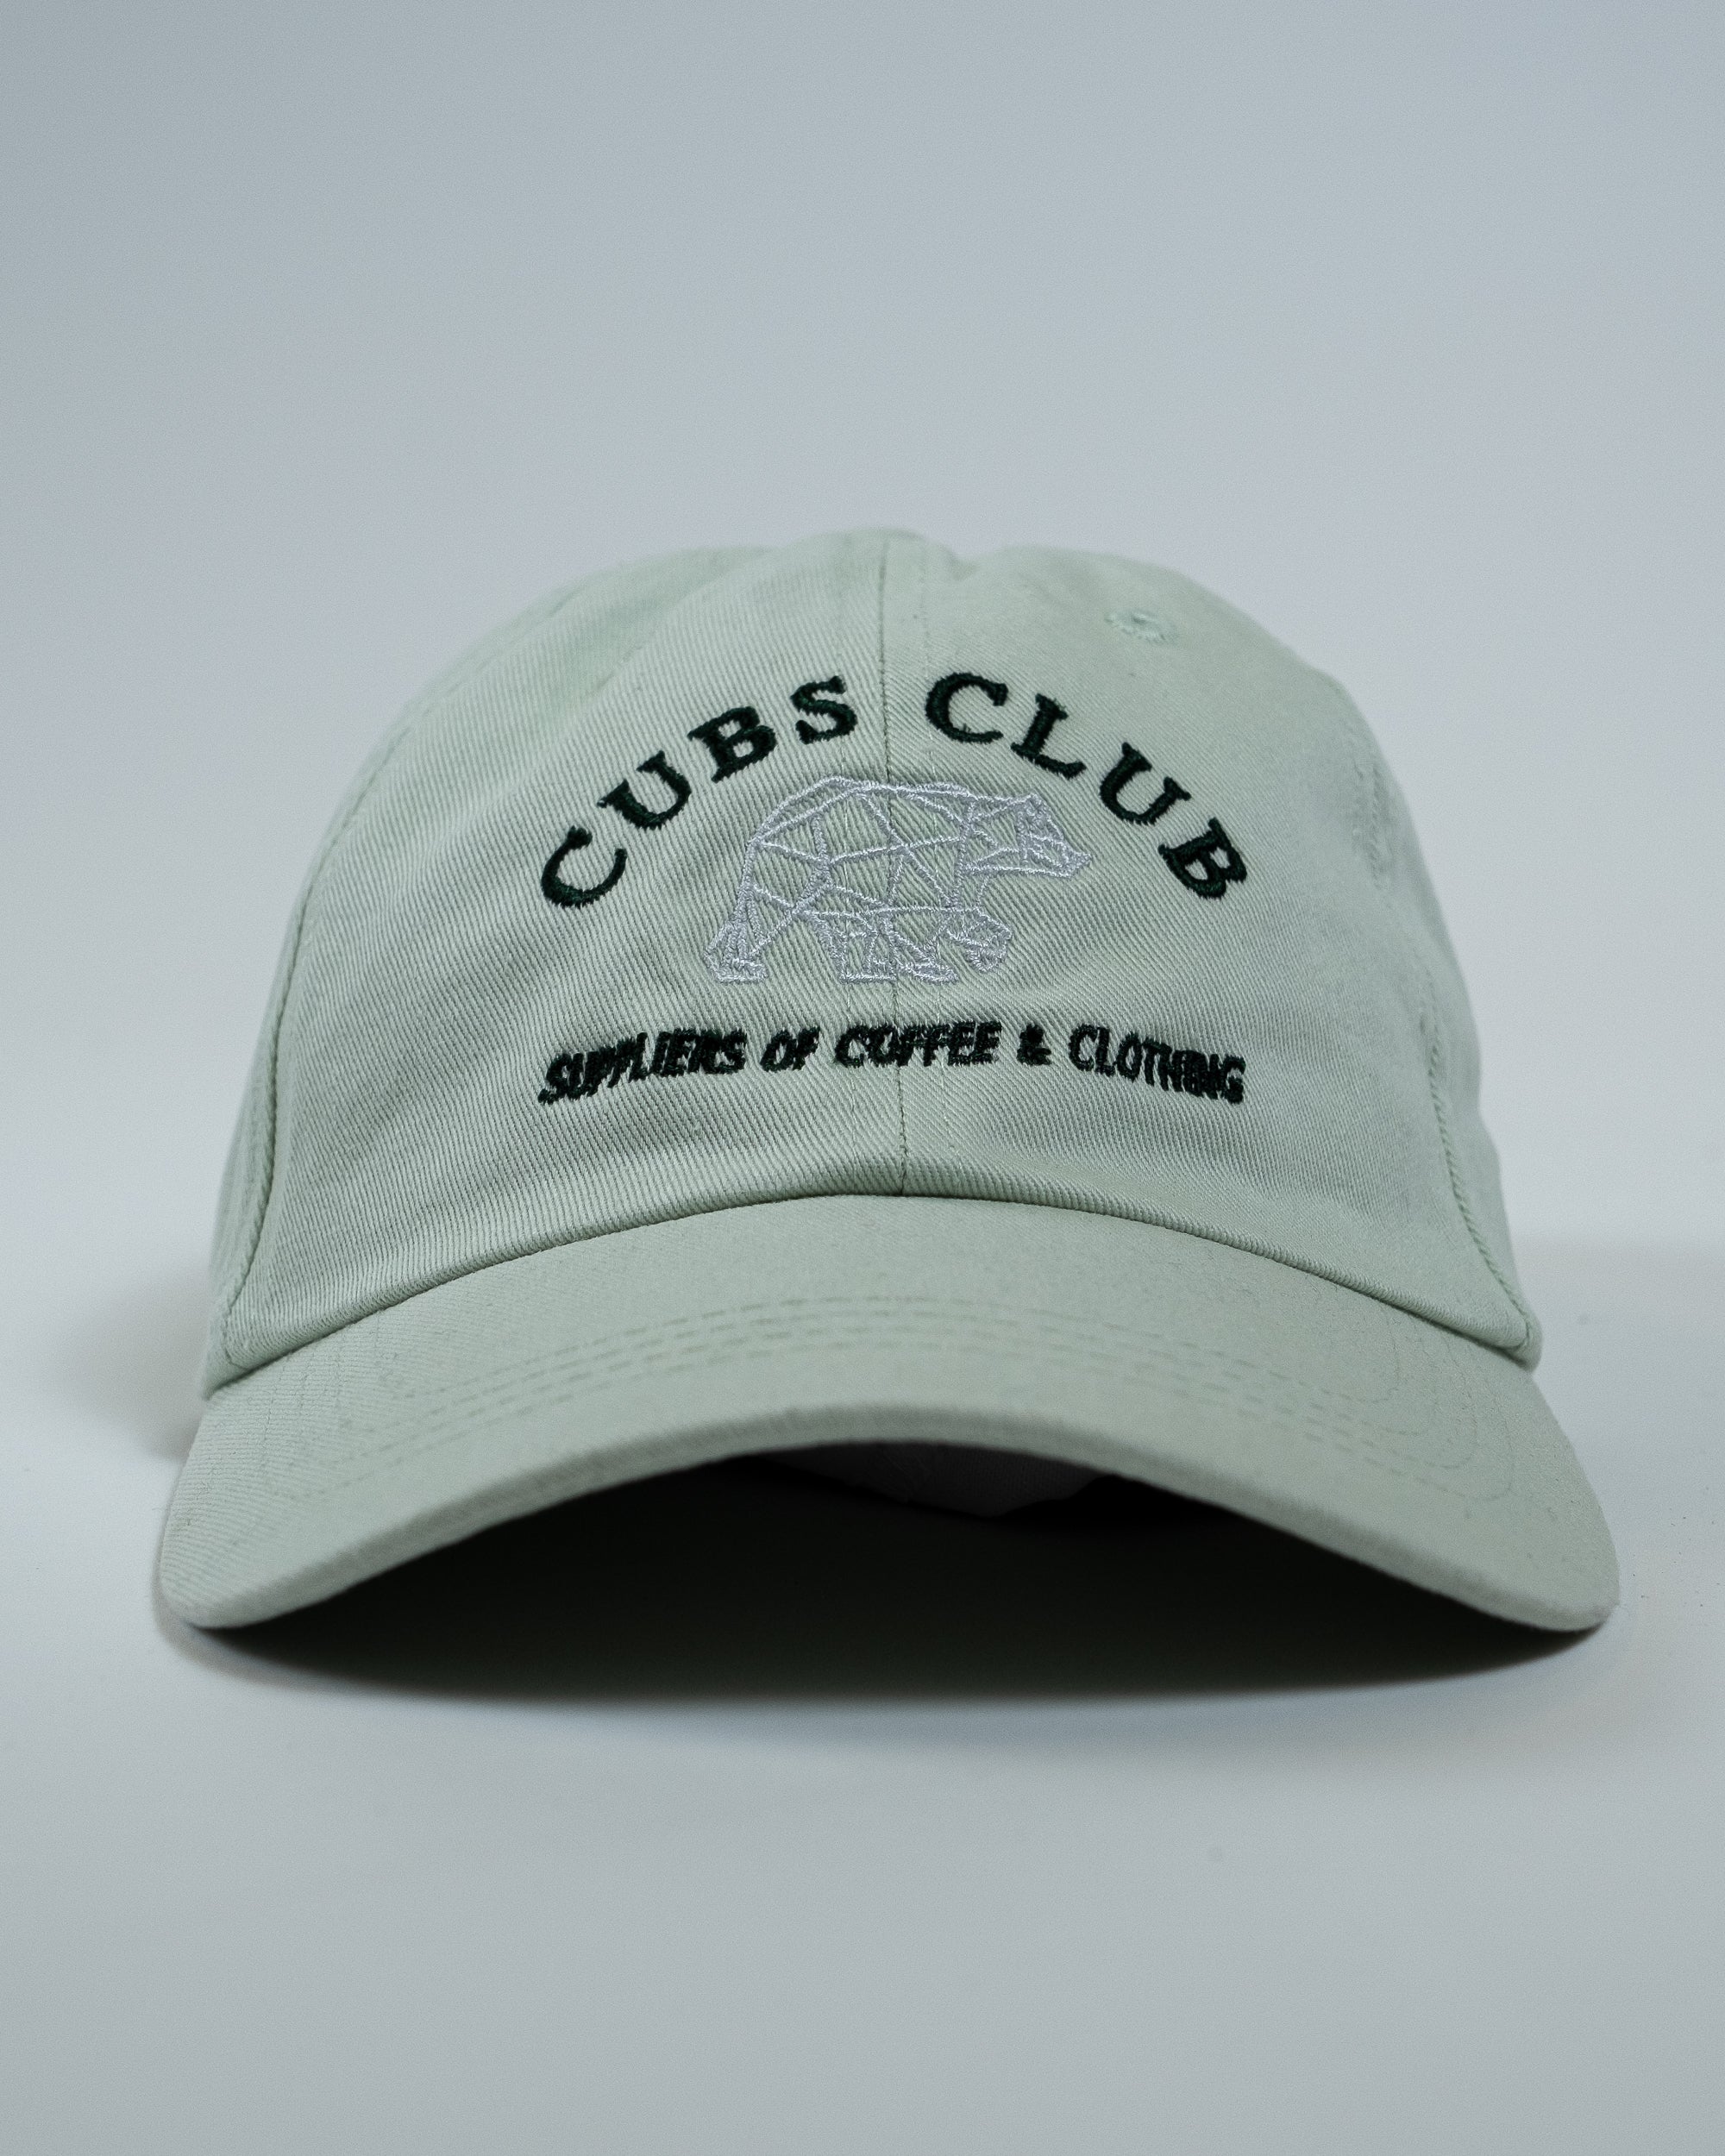 Cubs Club Cap Mint Green 